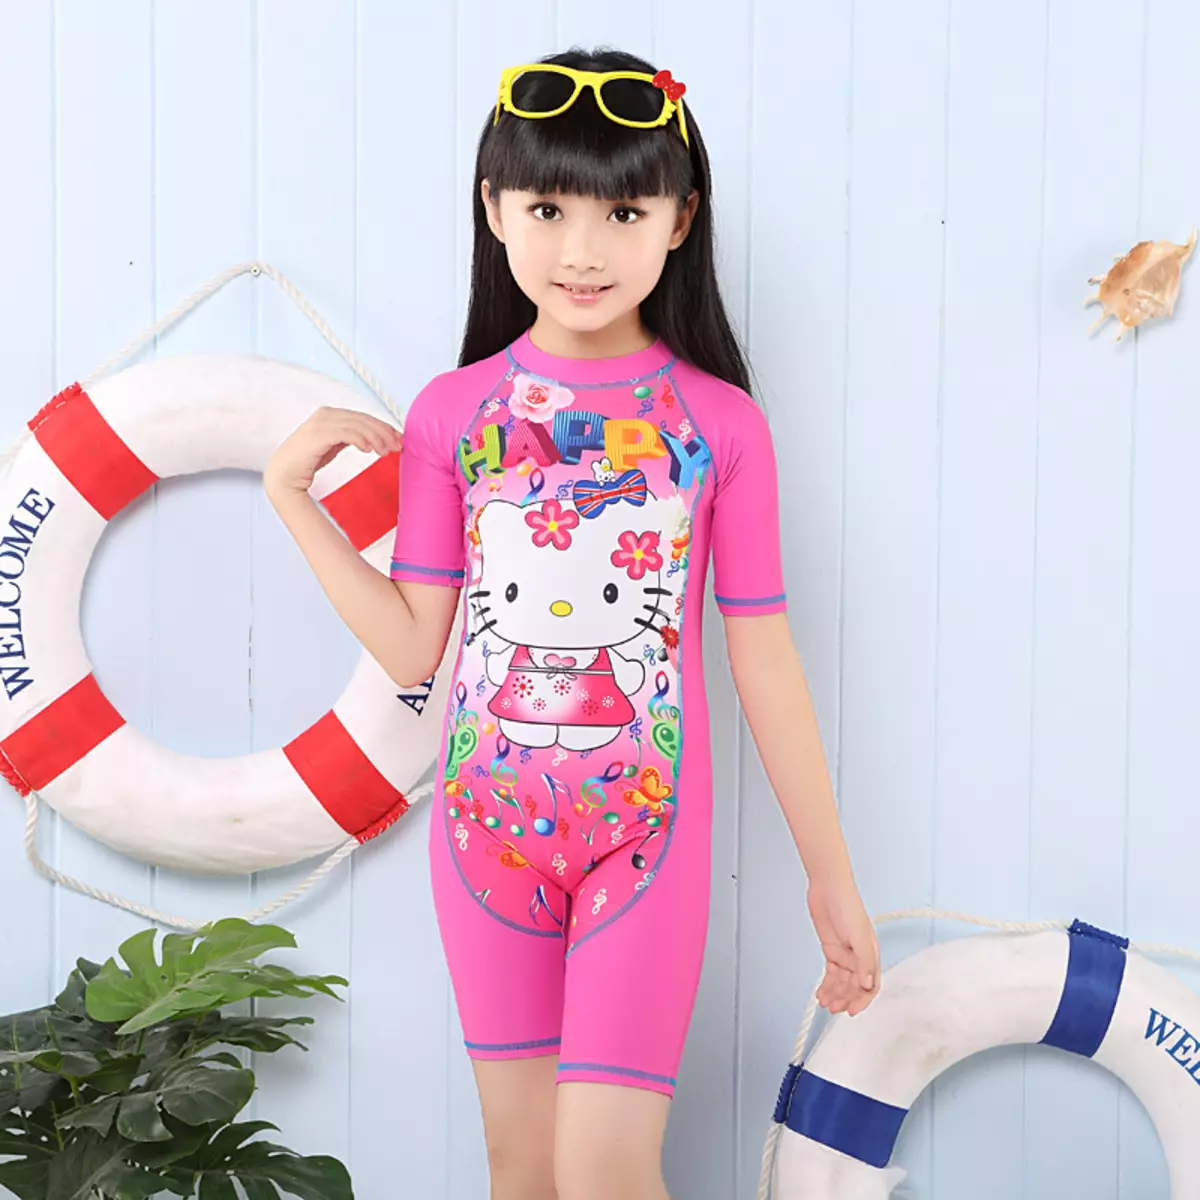 لباس شنا کودکان (122 عکس): مدل های دختران و کودکان، فیوژن، بافتنی، سفید 13579_106